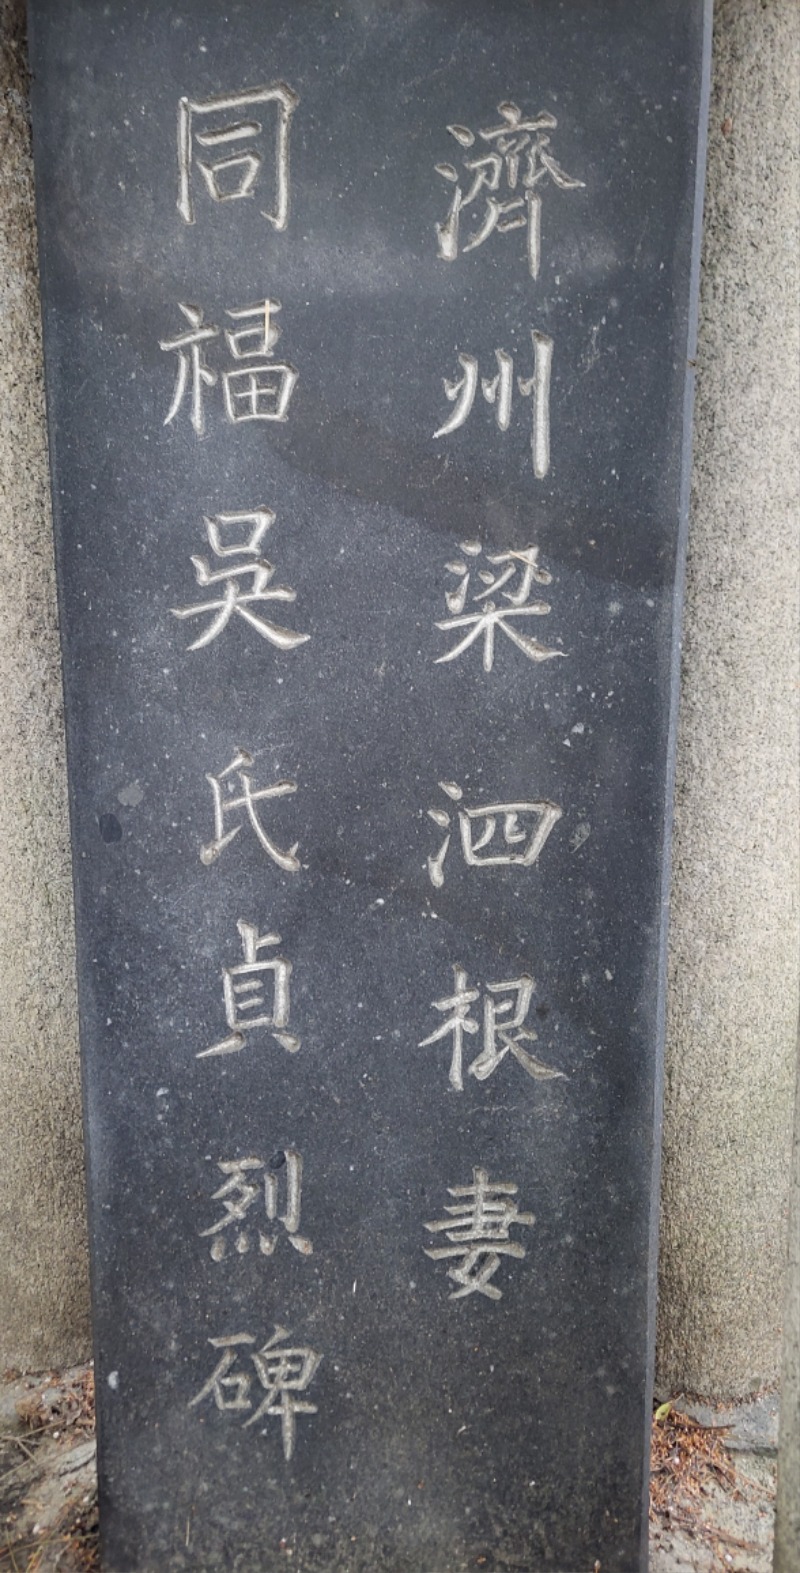 23문흥동 느티나무공원내에 있는 입석과 양사근처 동복오씨정렬비 (2).jpg